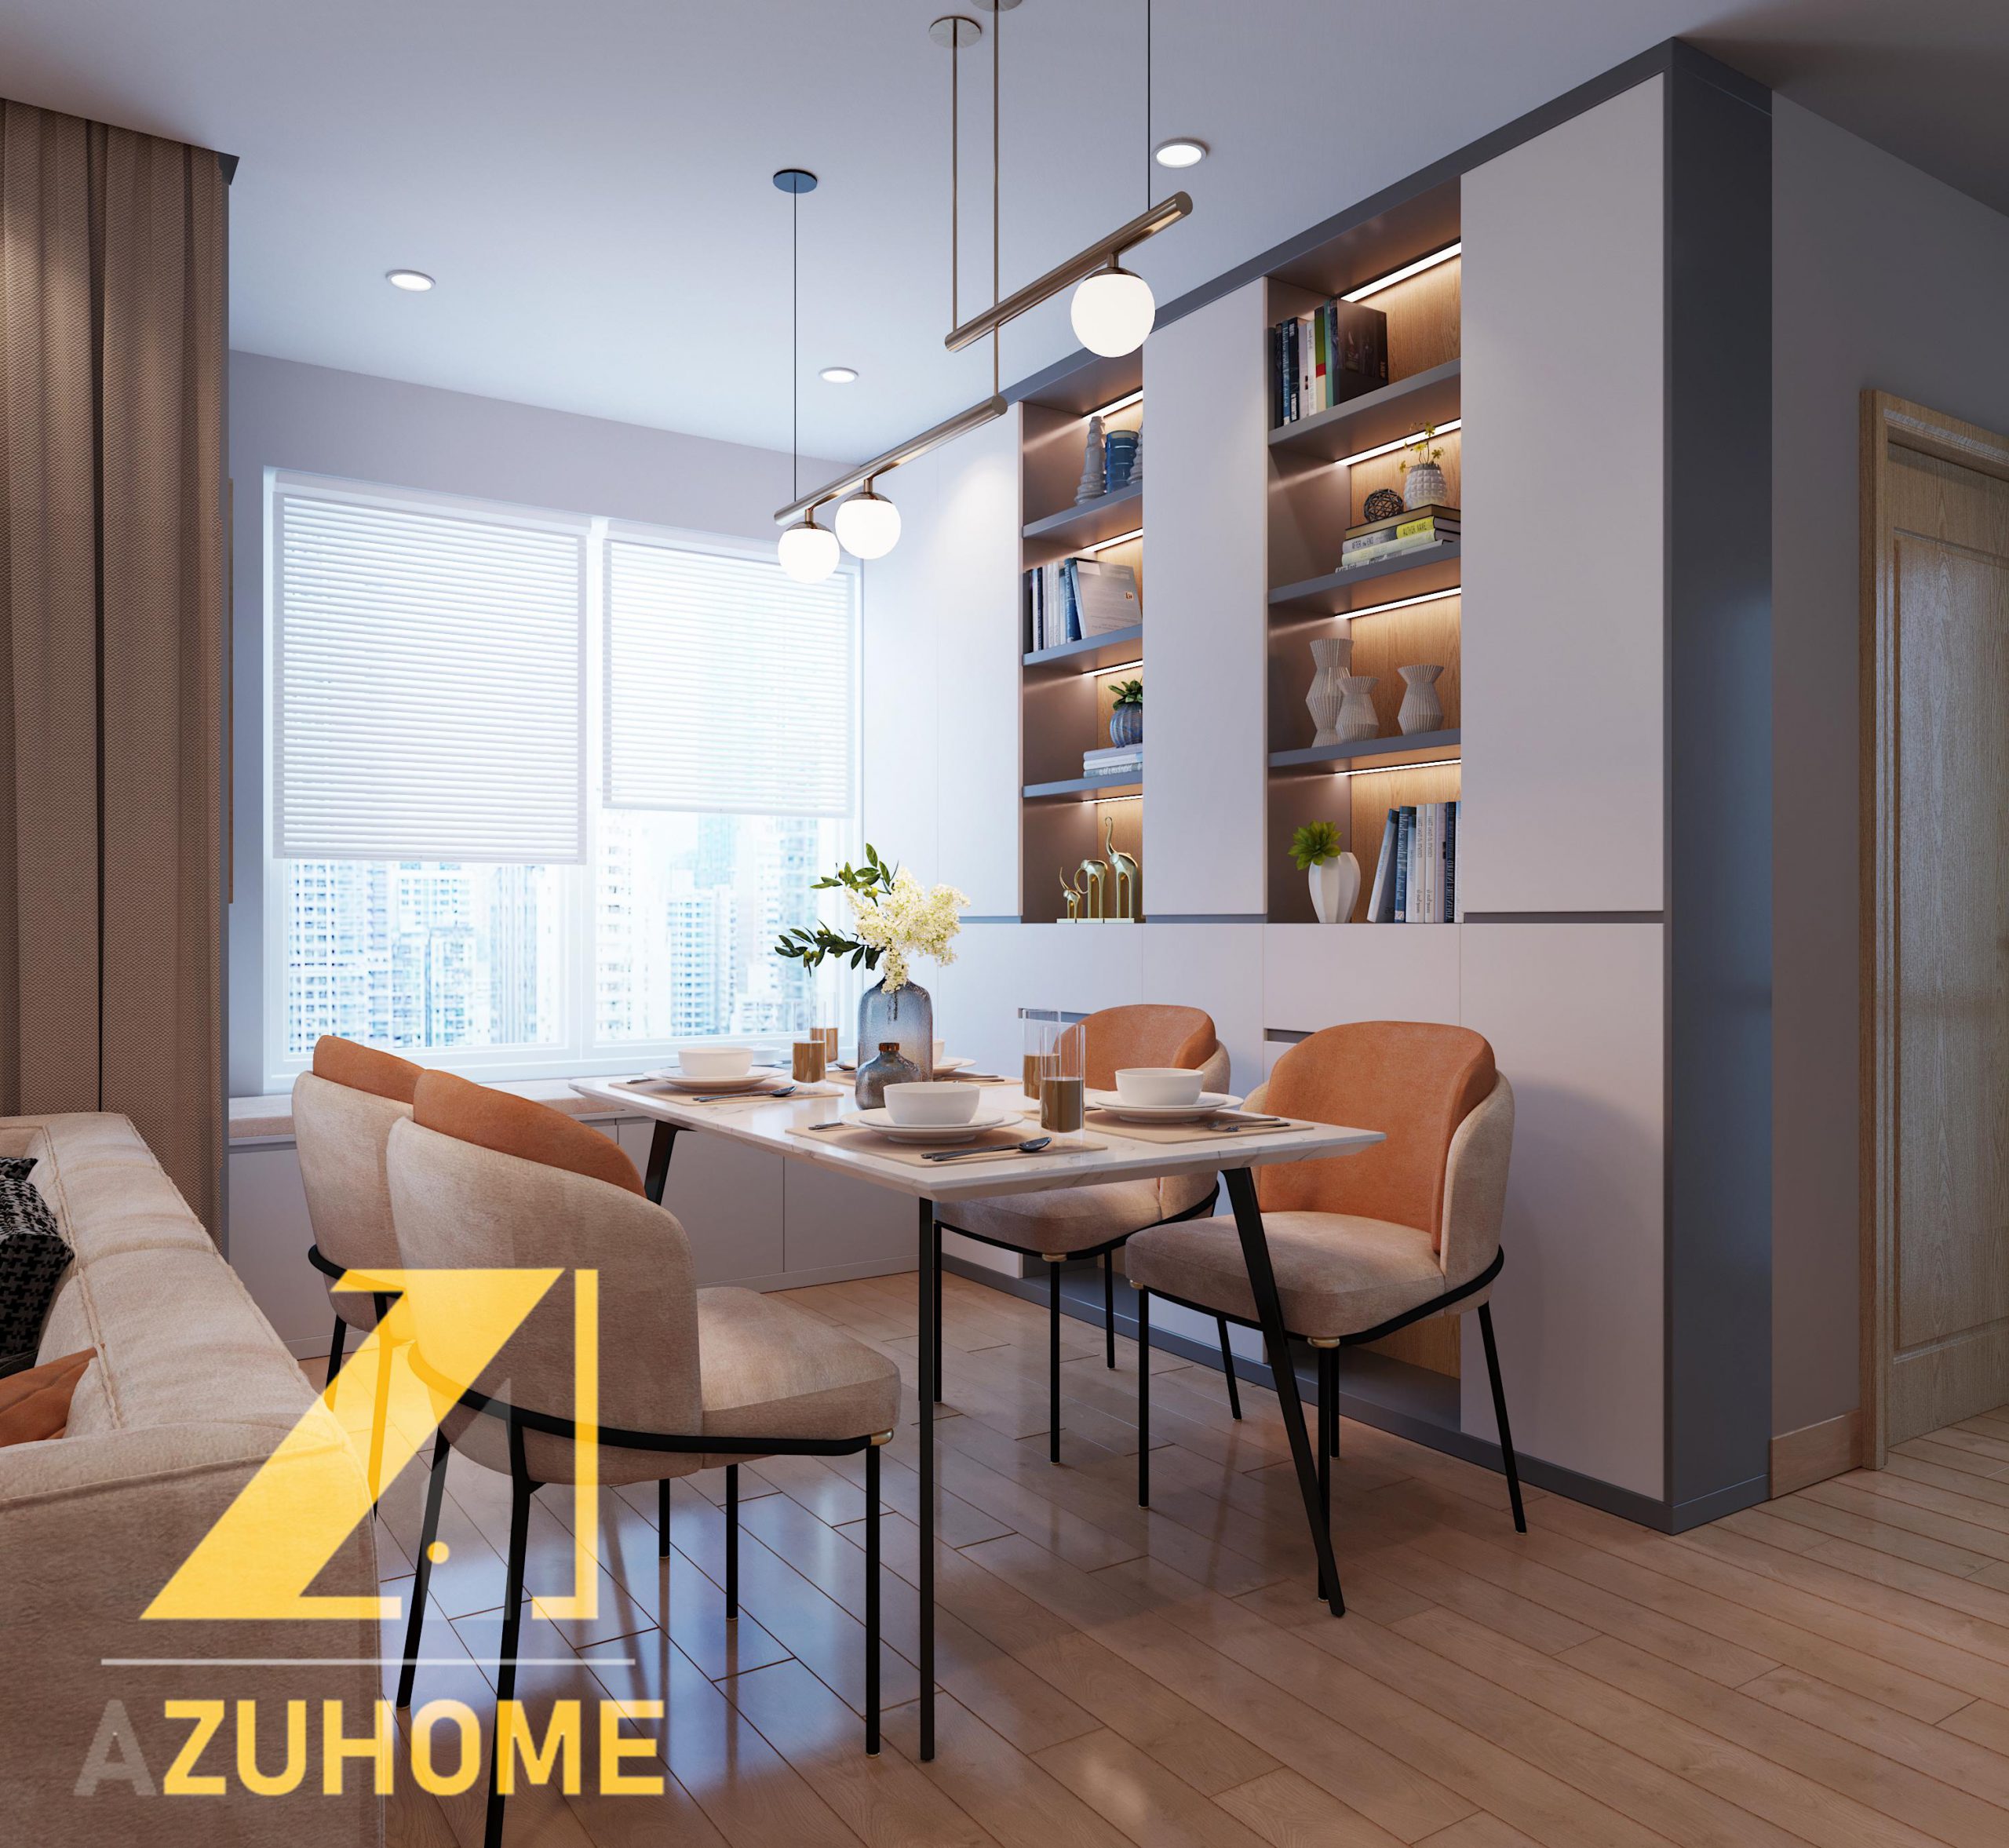 HOT Azuhome cho ra mắt mẫu thiết kế nội thất chung cư 70m2 độc đáo nhất